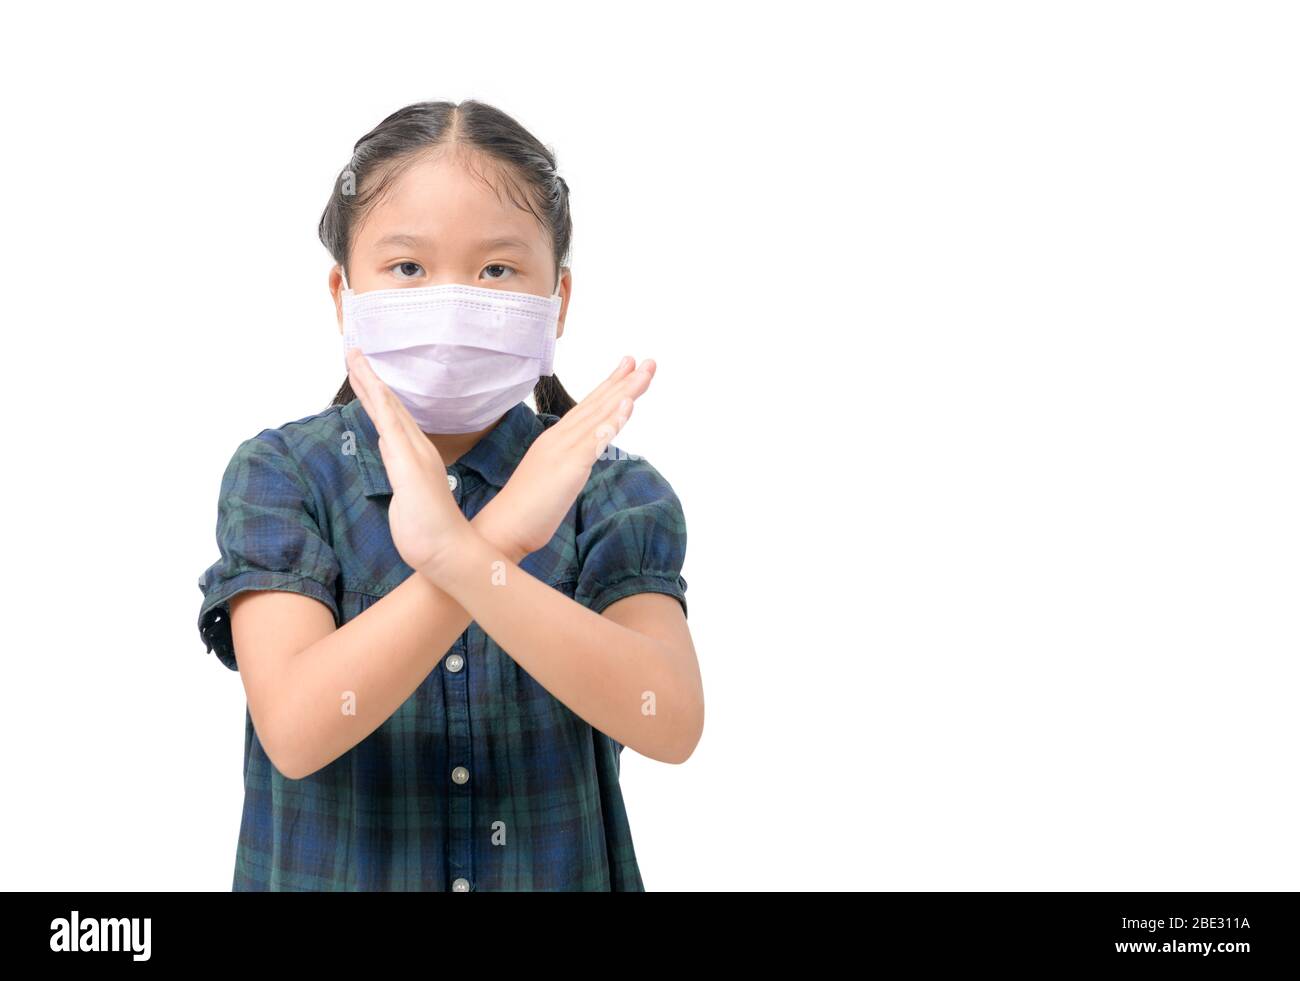 Les Asiatiques mignons portent un masque chirurgical pour se protéger contre les virus covid-19 et la pollution atmosphérique des PM2,5, et montrent des gestes de la main pour arrêter l'éclosion du virus covid-19 i Banque D'Images